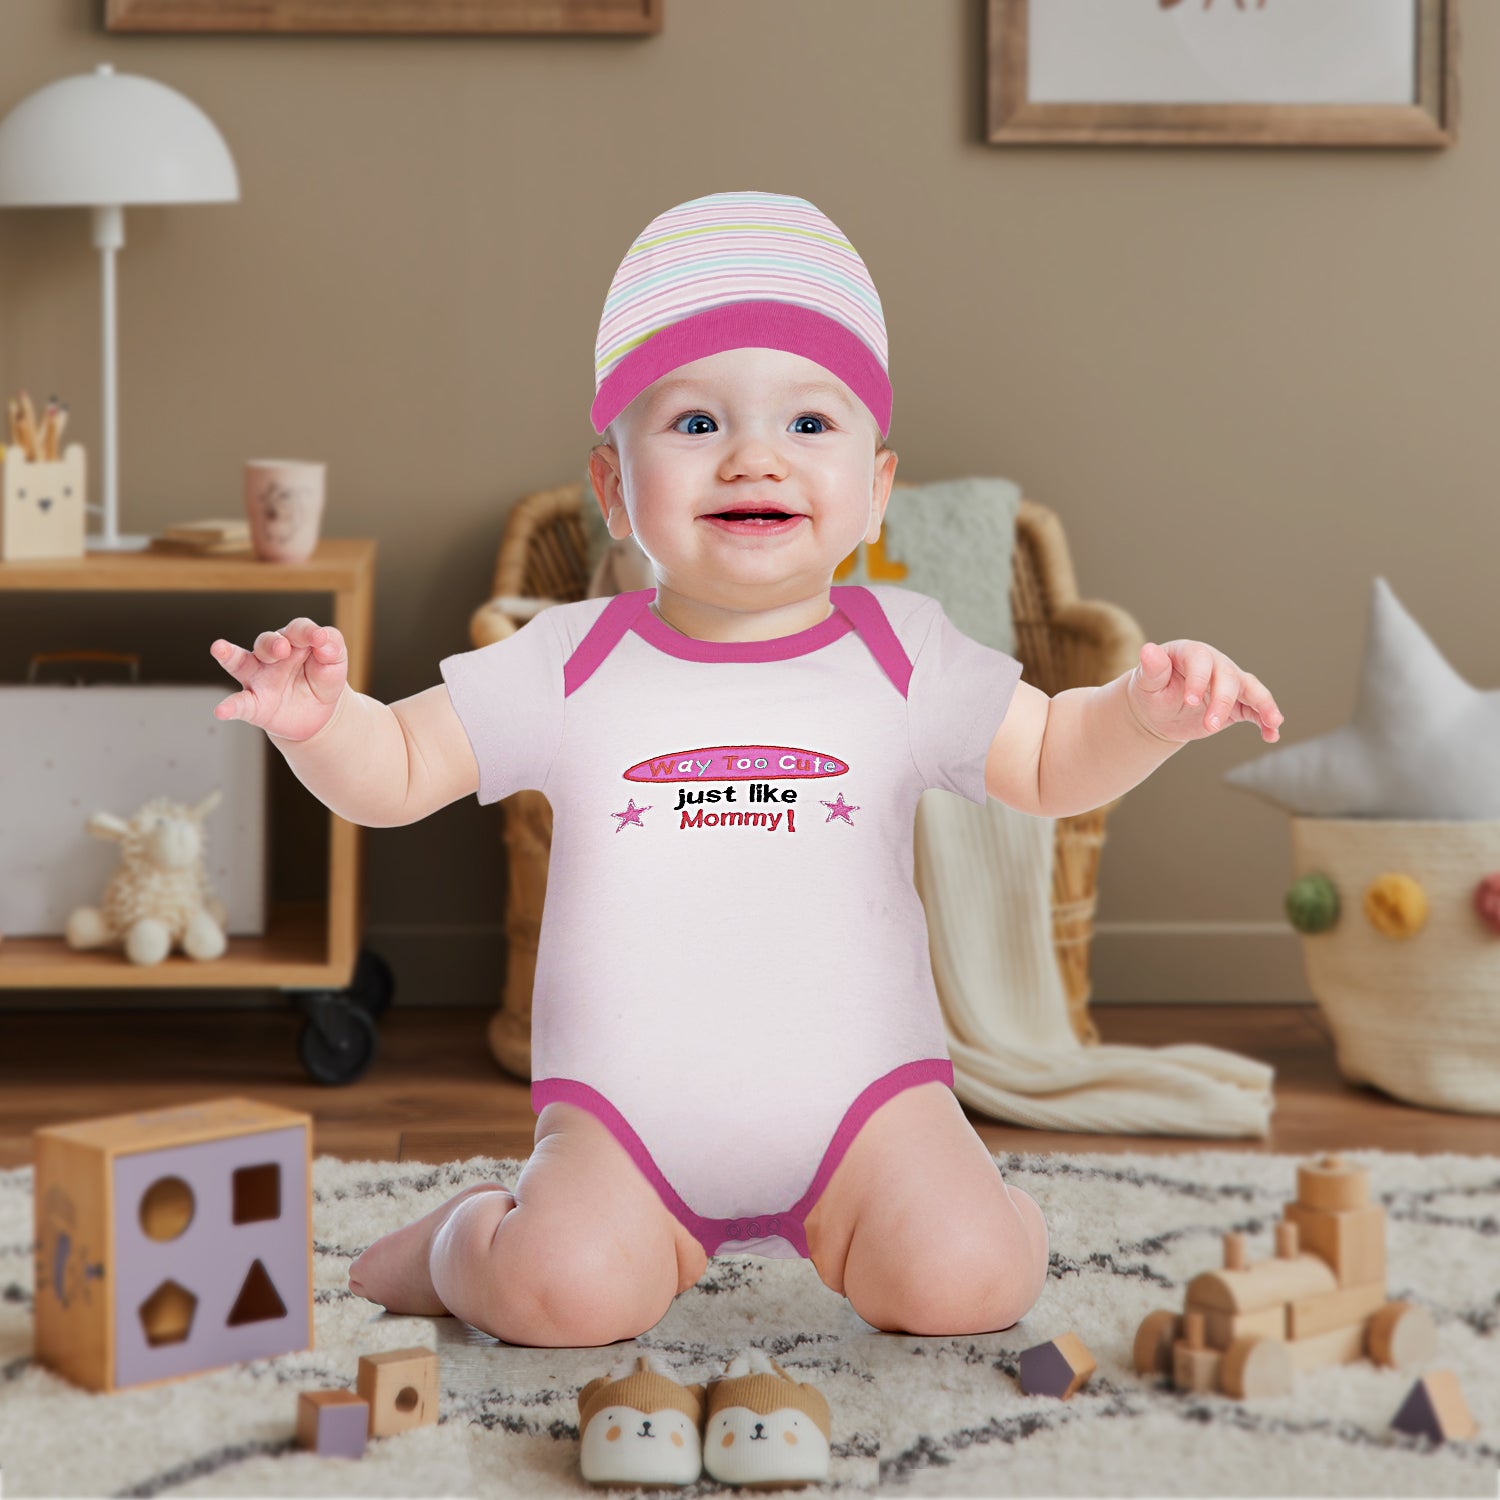 Baby Moo Way Too Cute Pink 5 Pcs Gift Set - Baby Moo